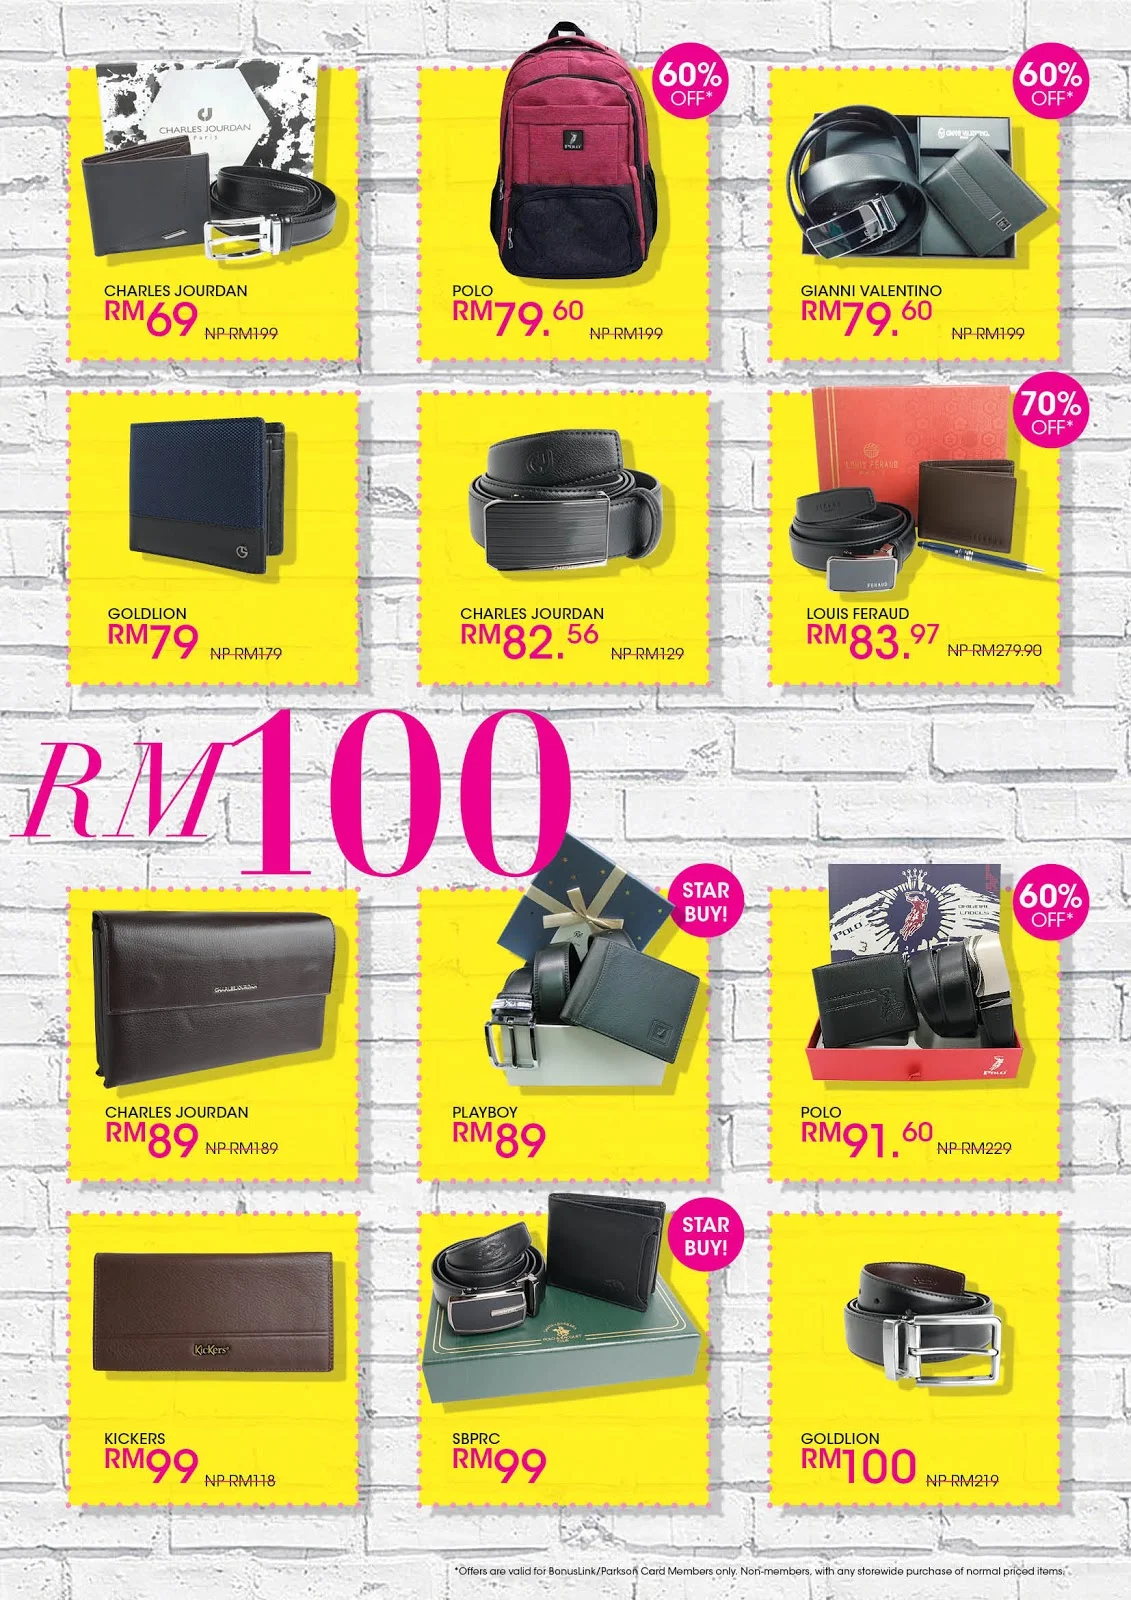 Parkson Buat Promosi Serendah RM39 dan Beli 2 Pada 1 Harga Untuk Bag Dan  Aksesori Berjenama!!